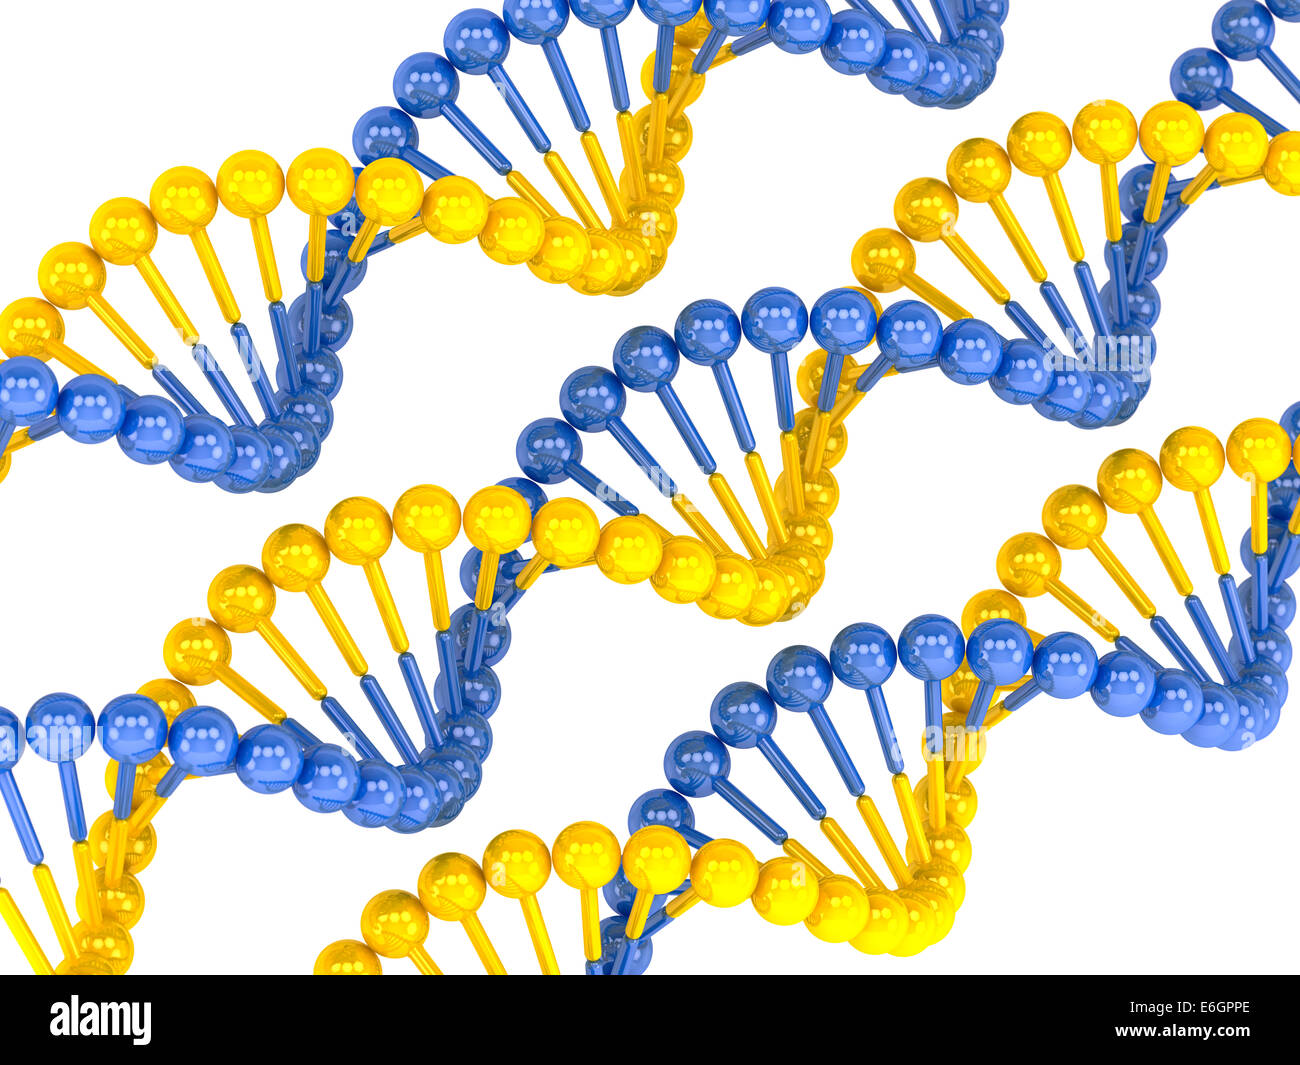 Gelb Blau DNA-Molekül auf weißem Hintergrund Stockfoto